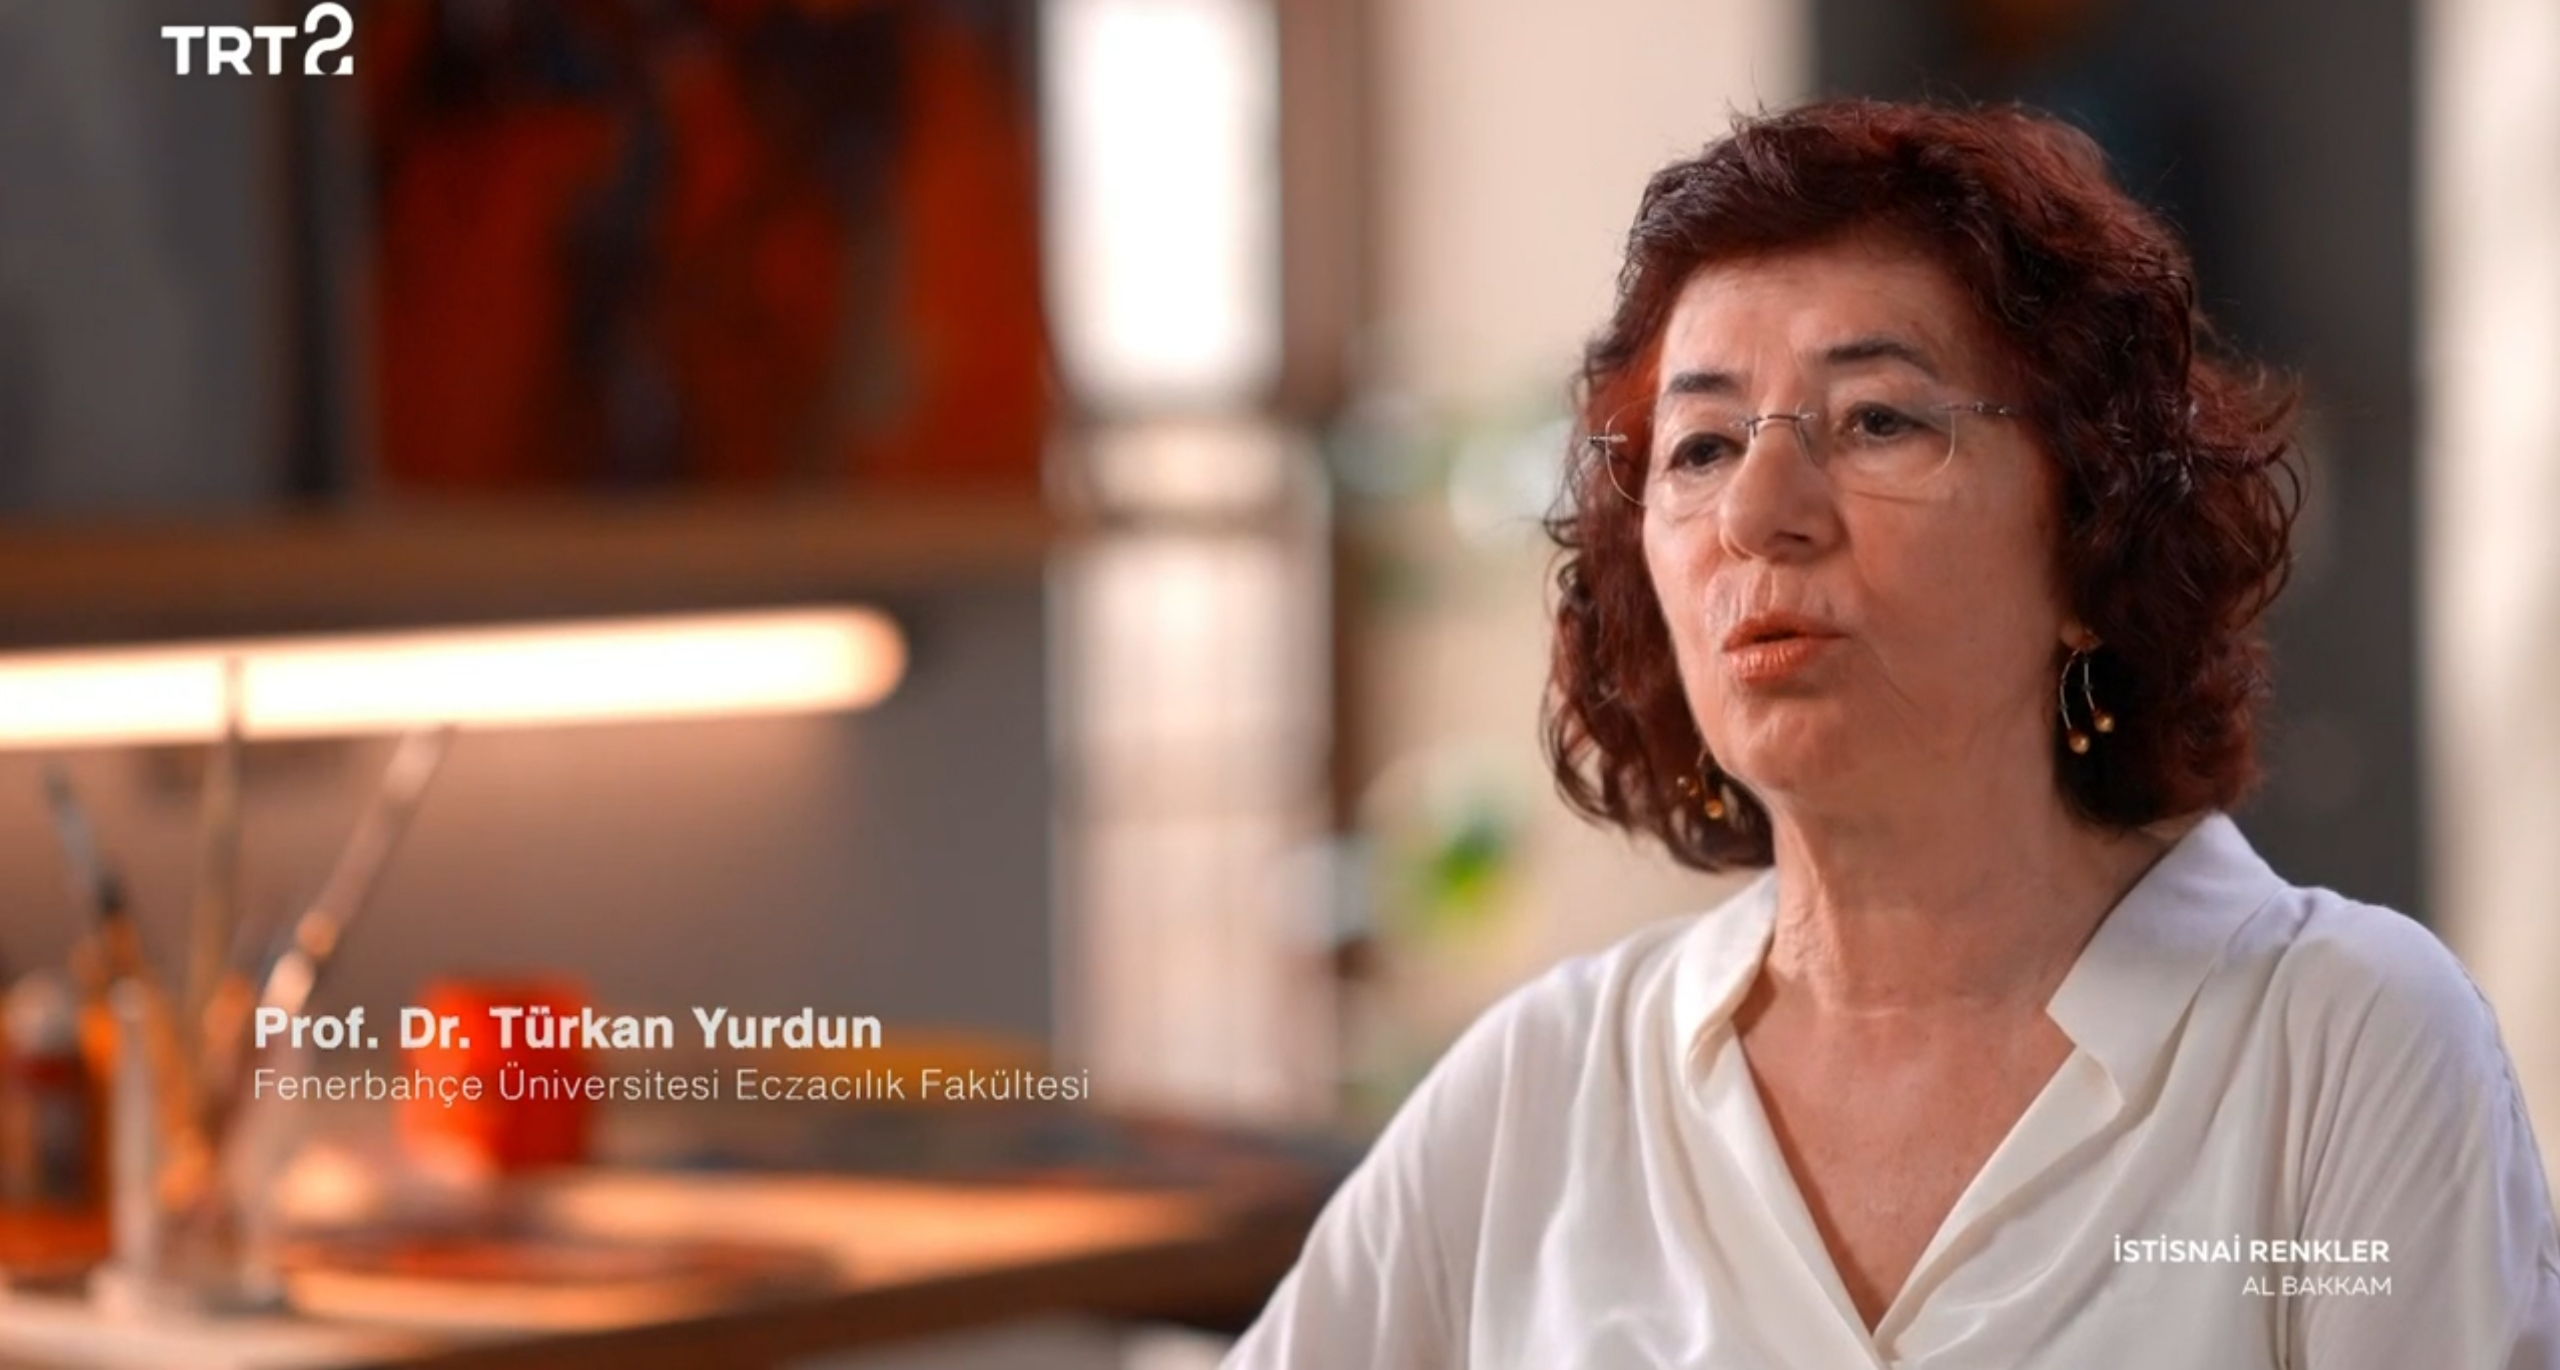 Eczacılık Fakültesi Farmasötik Toksikoloji Anabilim Dalı Başkanı Prof. Dr. Türkan YURDUN, TRT 2 de yayınlanan İstisnai Renkler adlı programa katıldı.